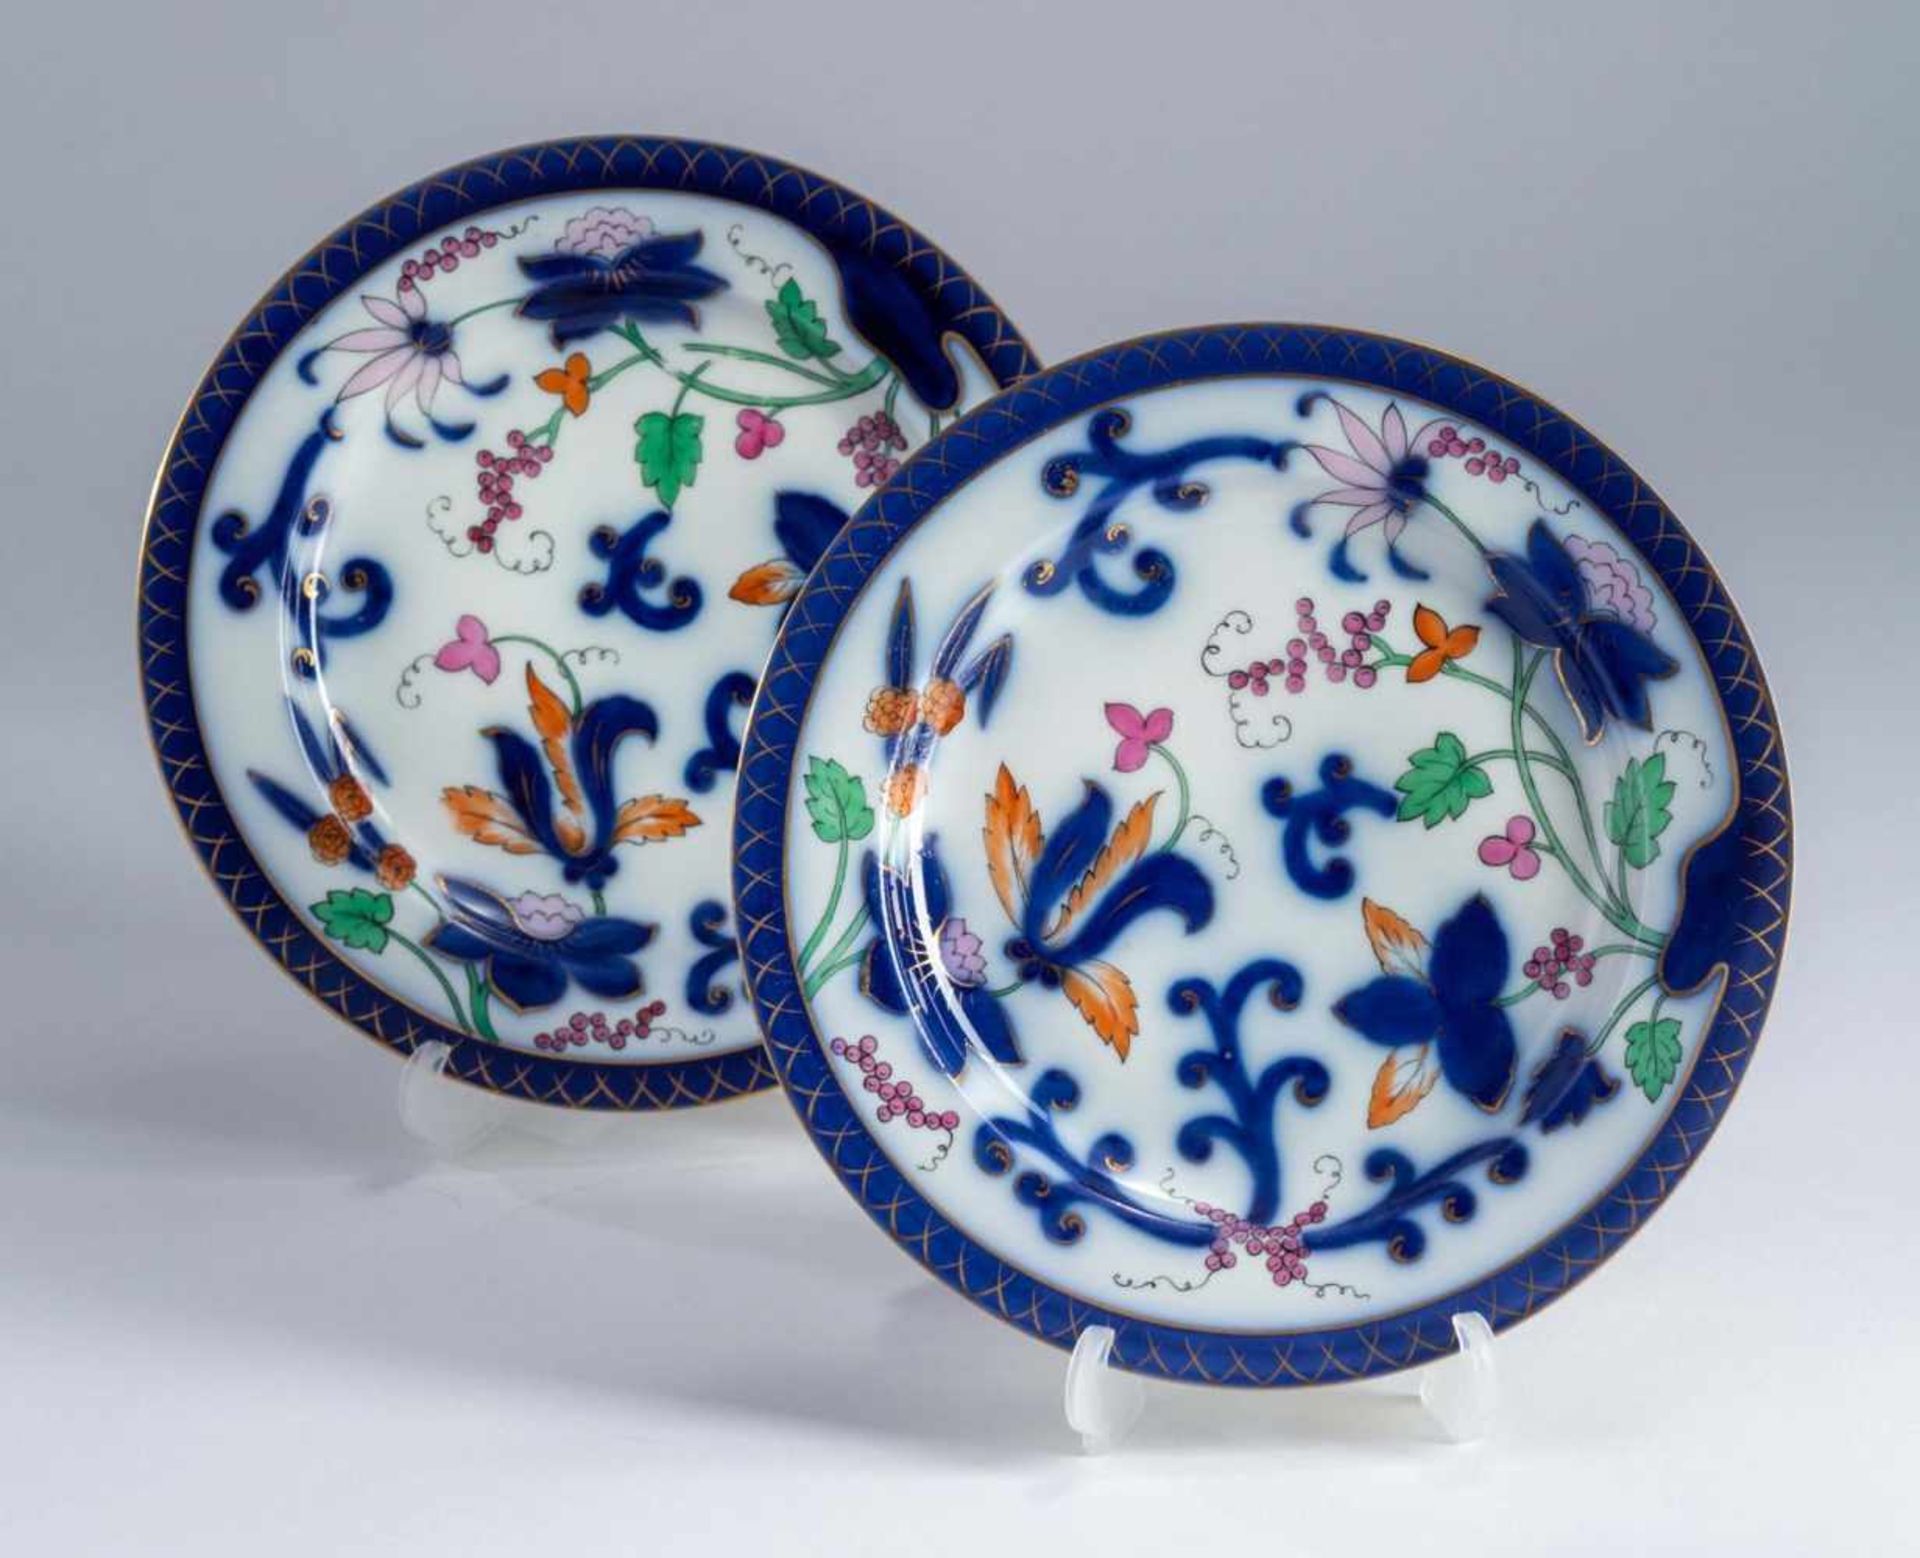 2 Imari-Teller KPM,weißes Porzellan mit Blumenmalerei im Imari-Stil. 1849-1870. Florale